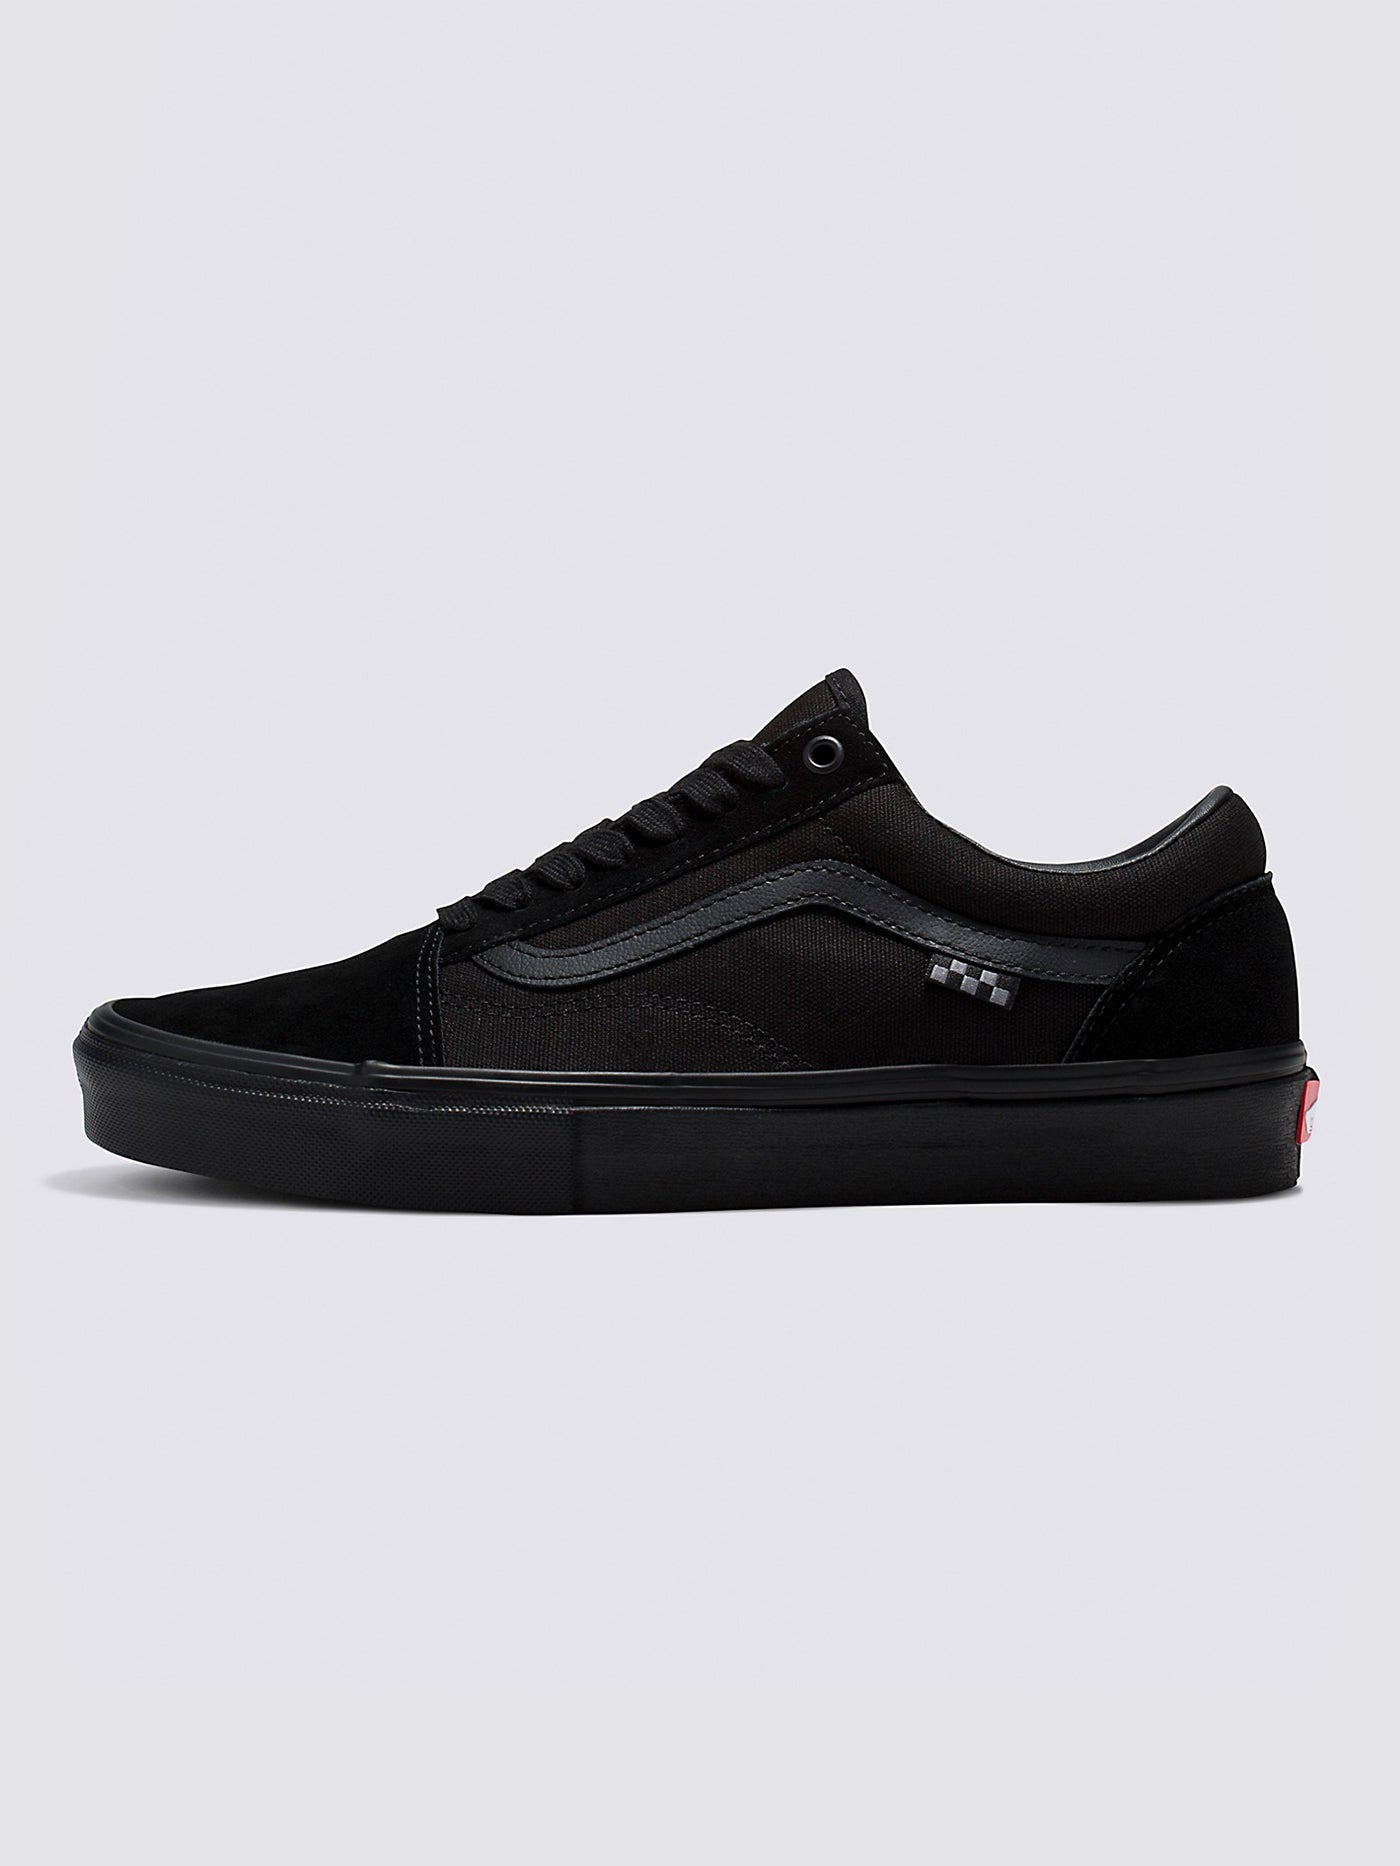 Vans Skate Old Skool Black/Black Shoes